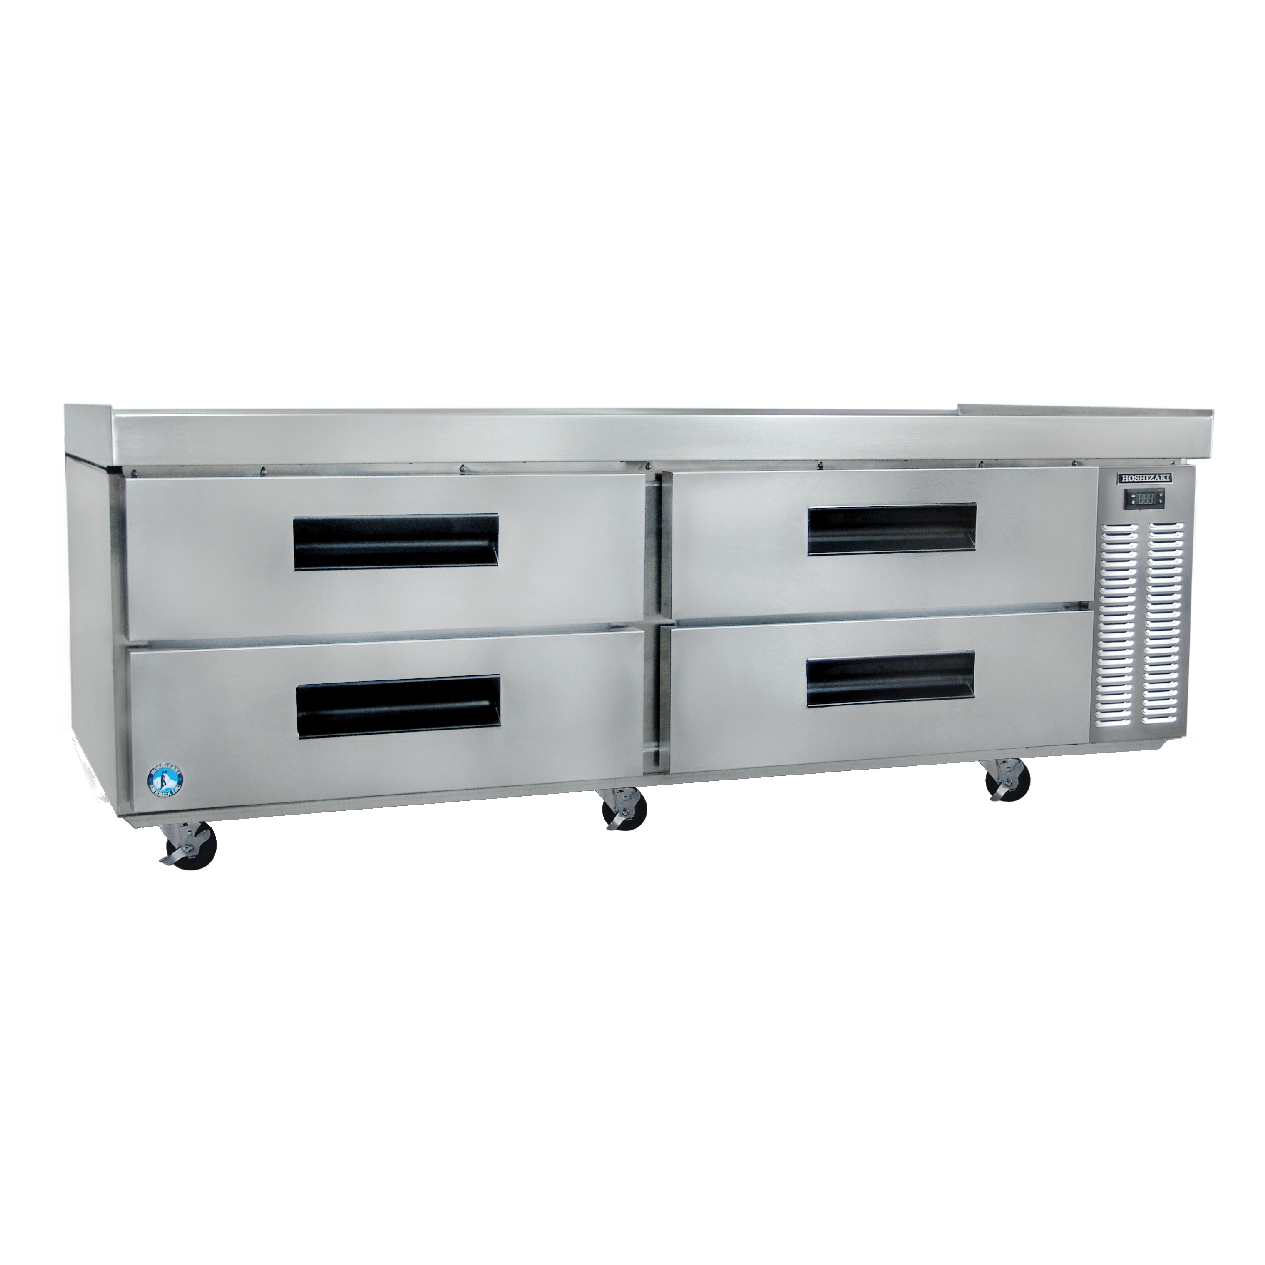 superior-equipment-supply - Hoshizaki - Hoshizaki 72.5" Wide Refrigerated Equipment Stand With Aluminium Interior